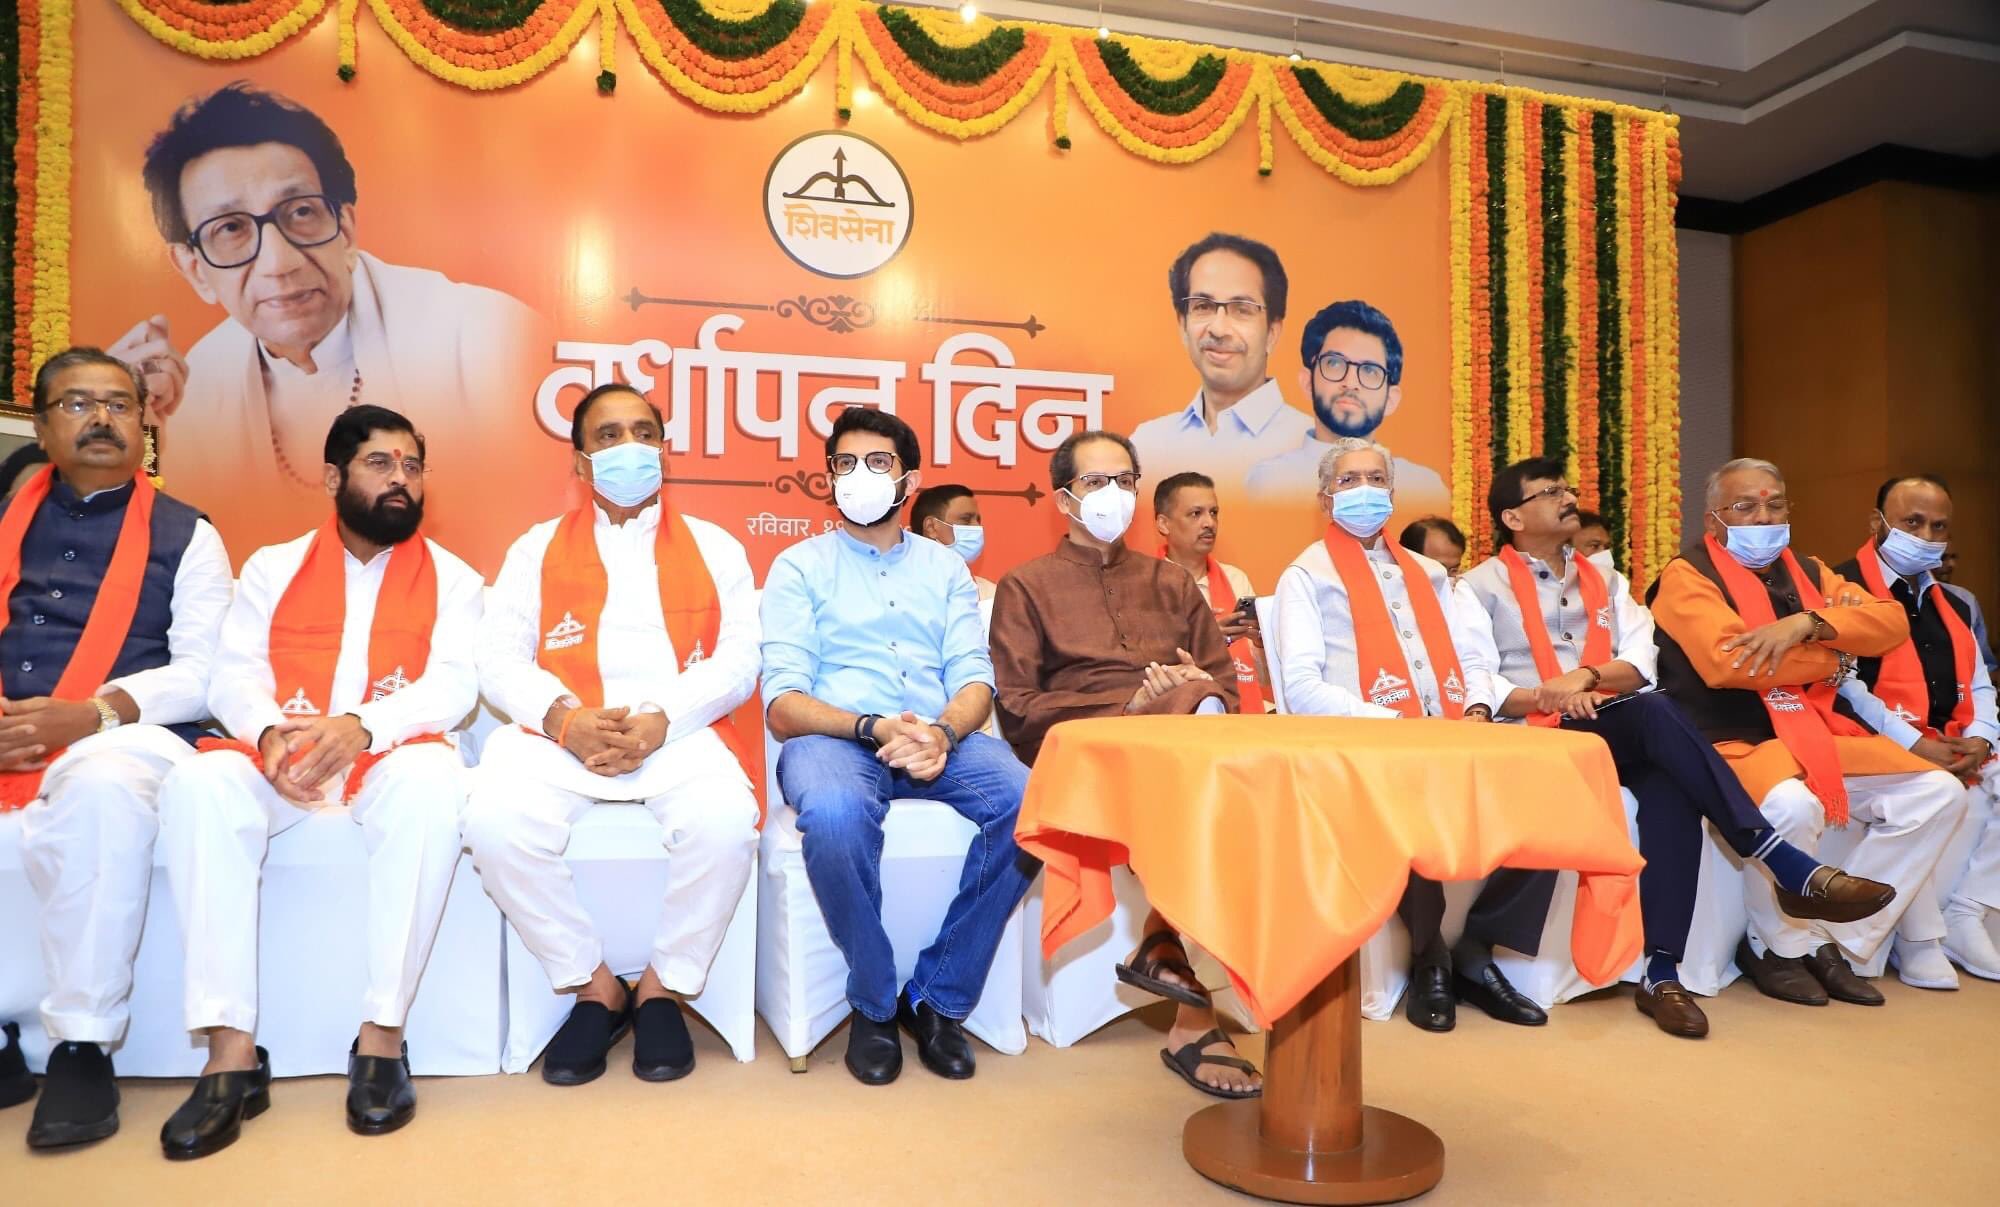 Maharashtra : विधायक दल की बैठक में उद्धव ठाकरे ने दिए मुख्यमंत्री पद छोड़ने के संकेत, एकनाथ शिंदे को CM पद का ऑफर, अजय चौधरी बने शिवसेना विधायक दल के नेता